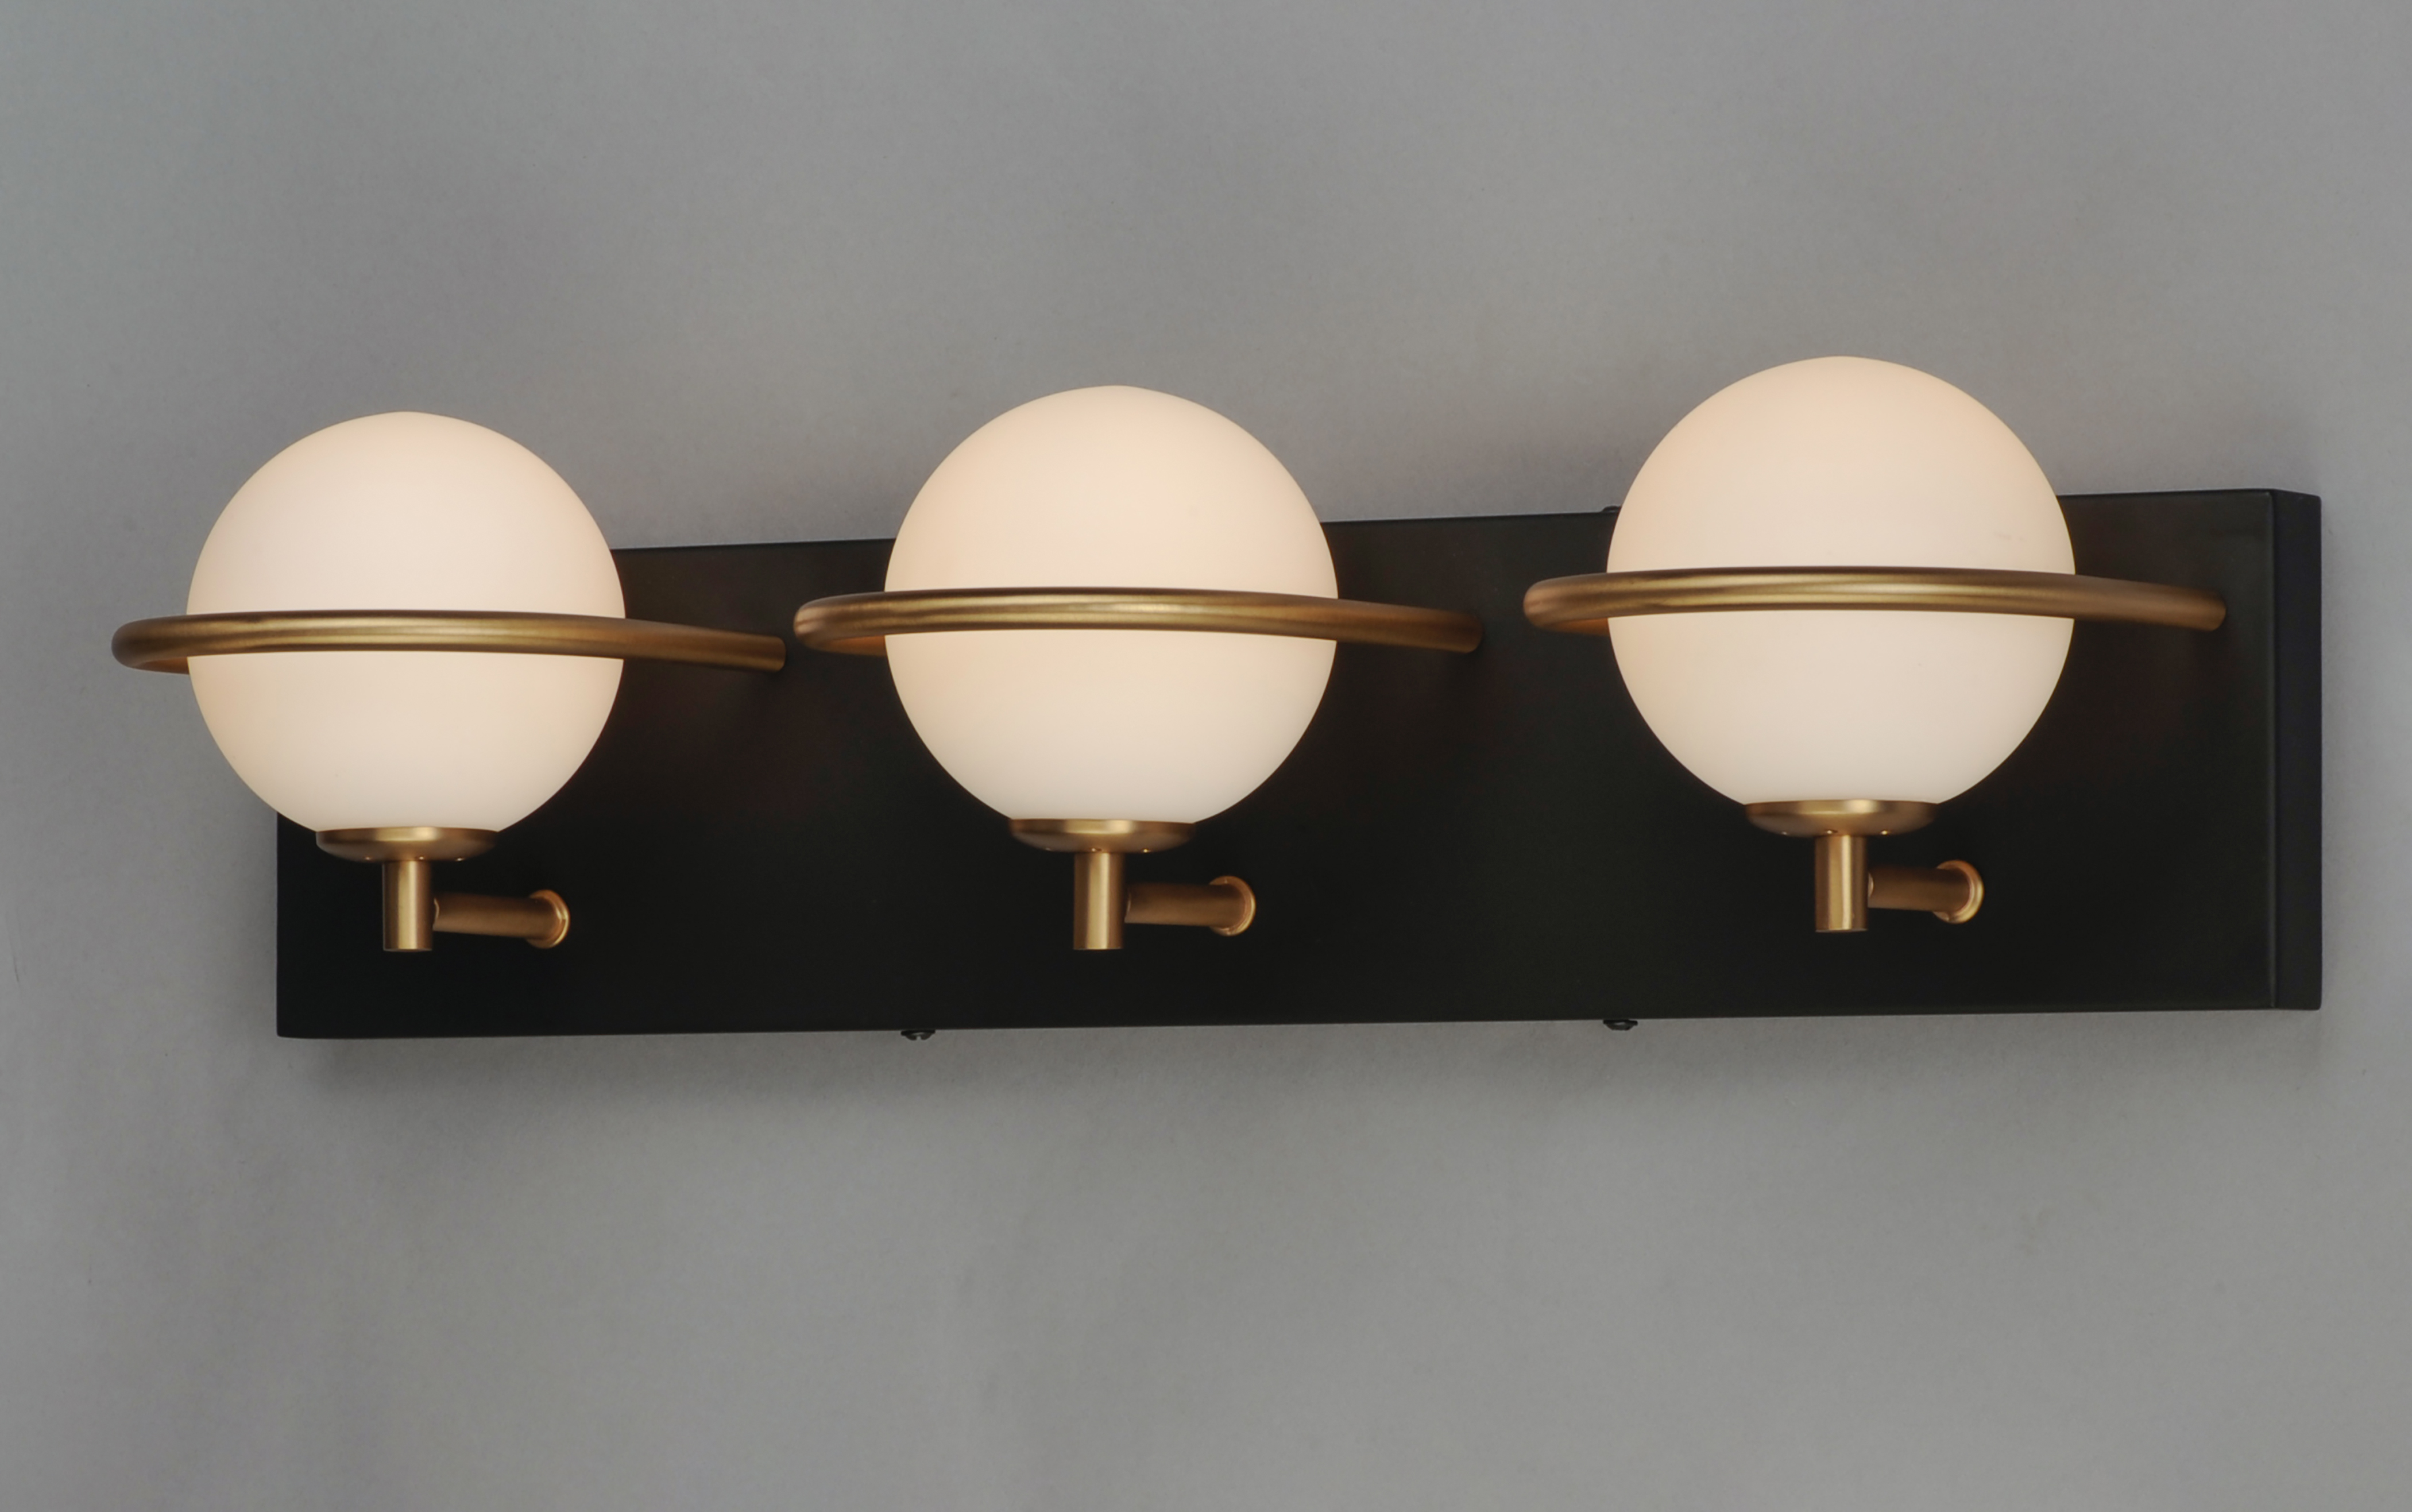 Led Lightbulbs For Bathroom Vanity